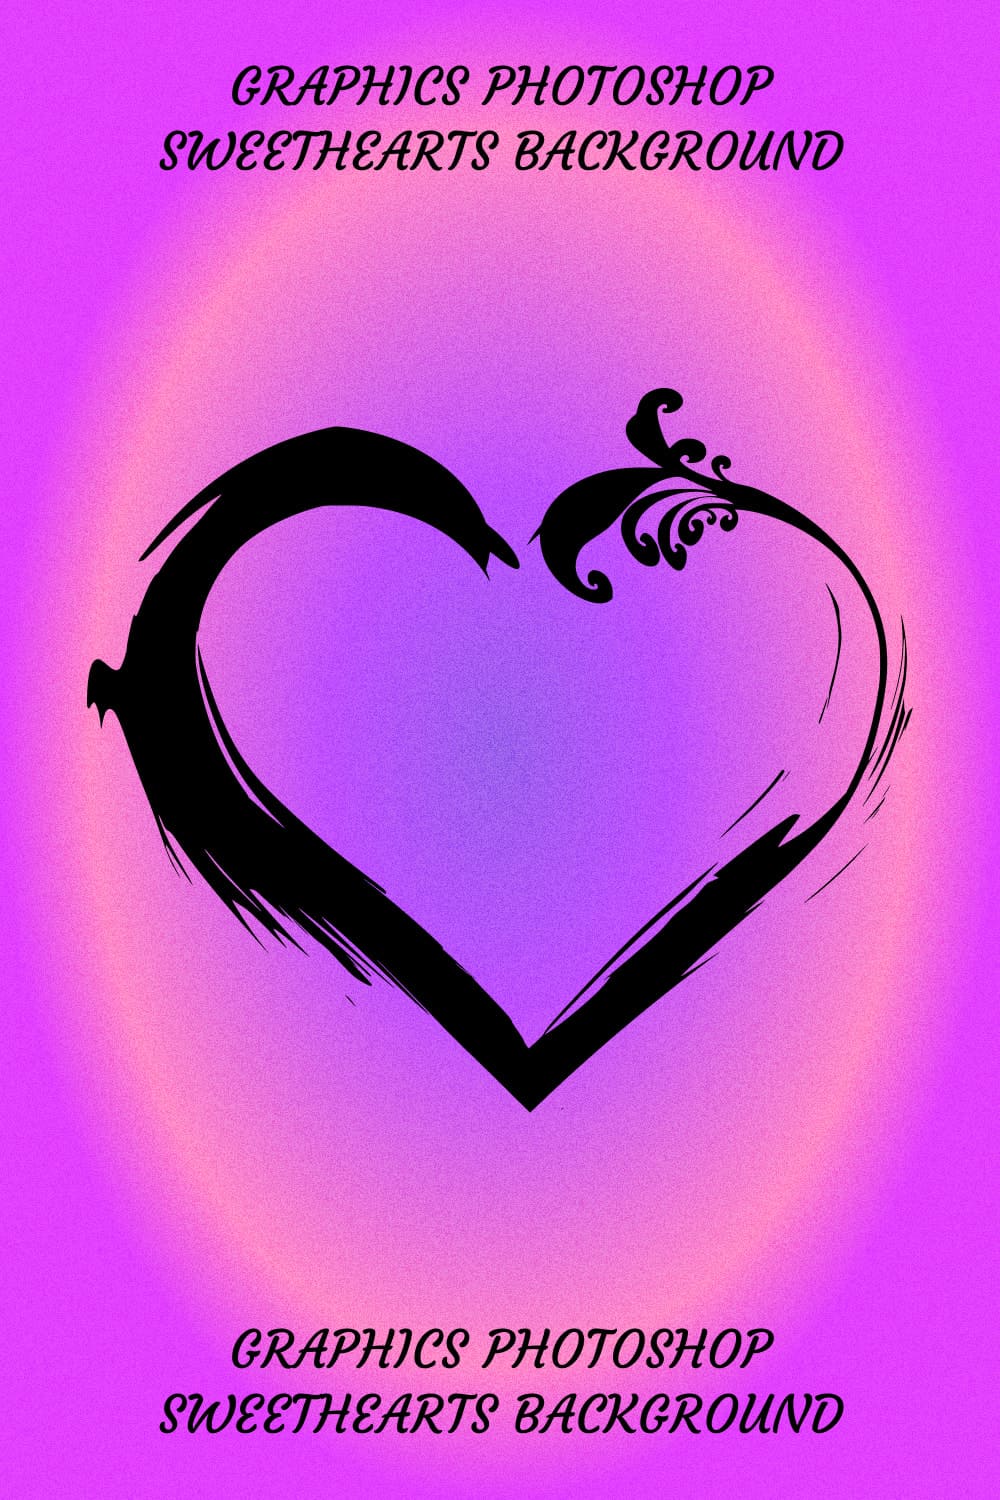 Graphics Photoshop Sweethearts Background - Pinterest Image.